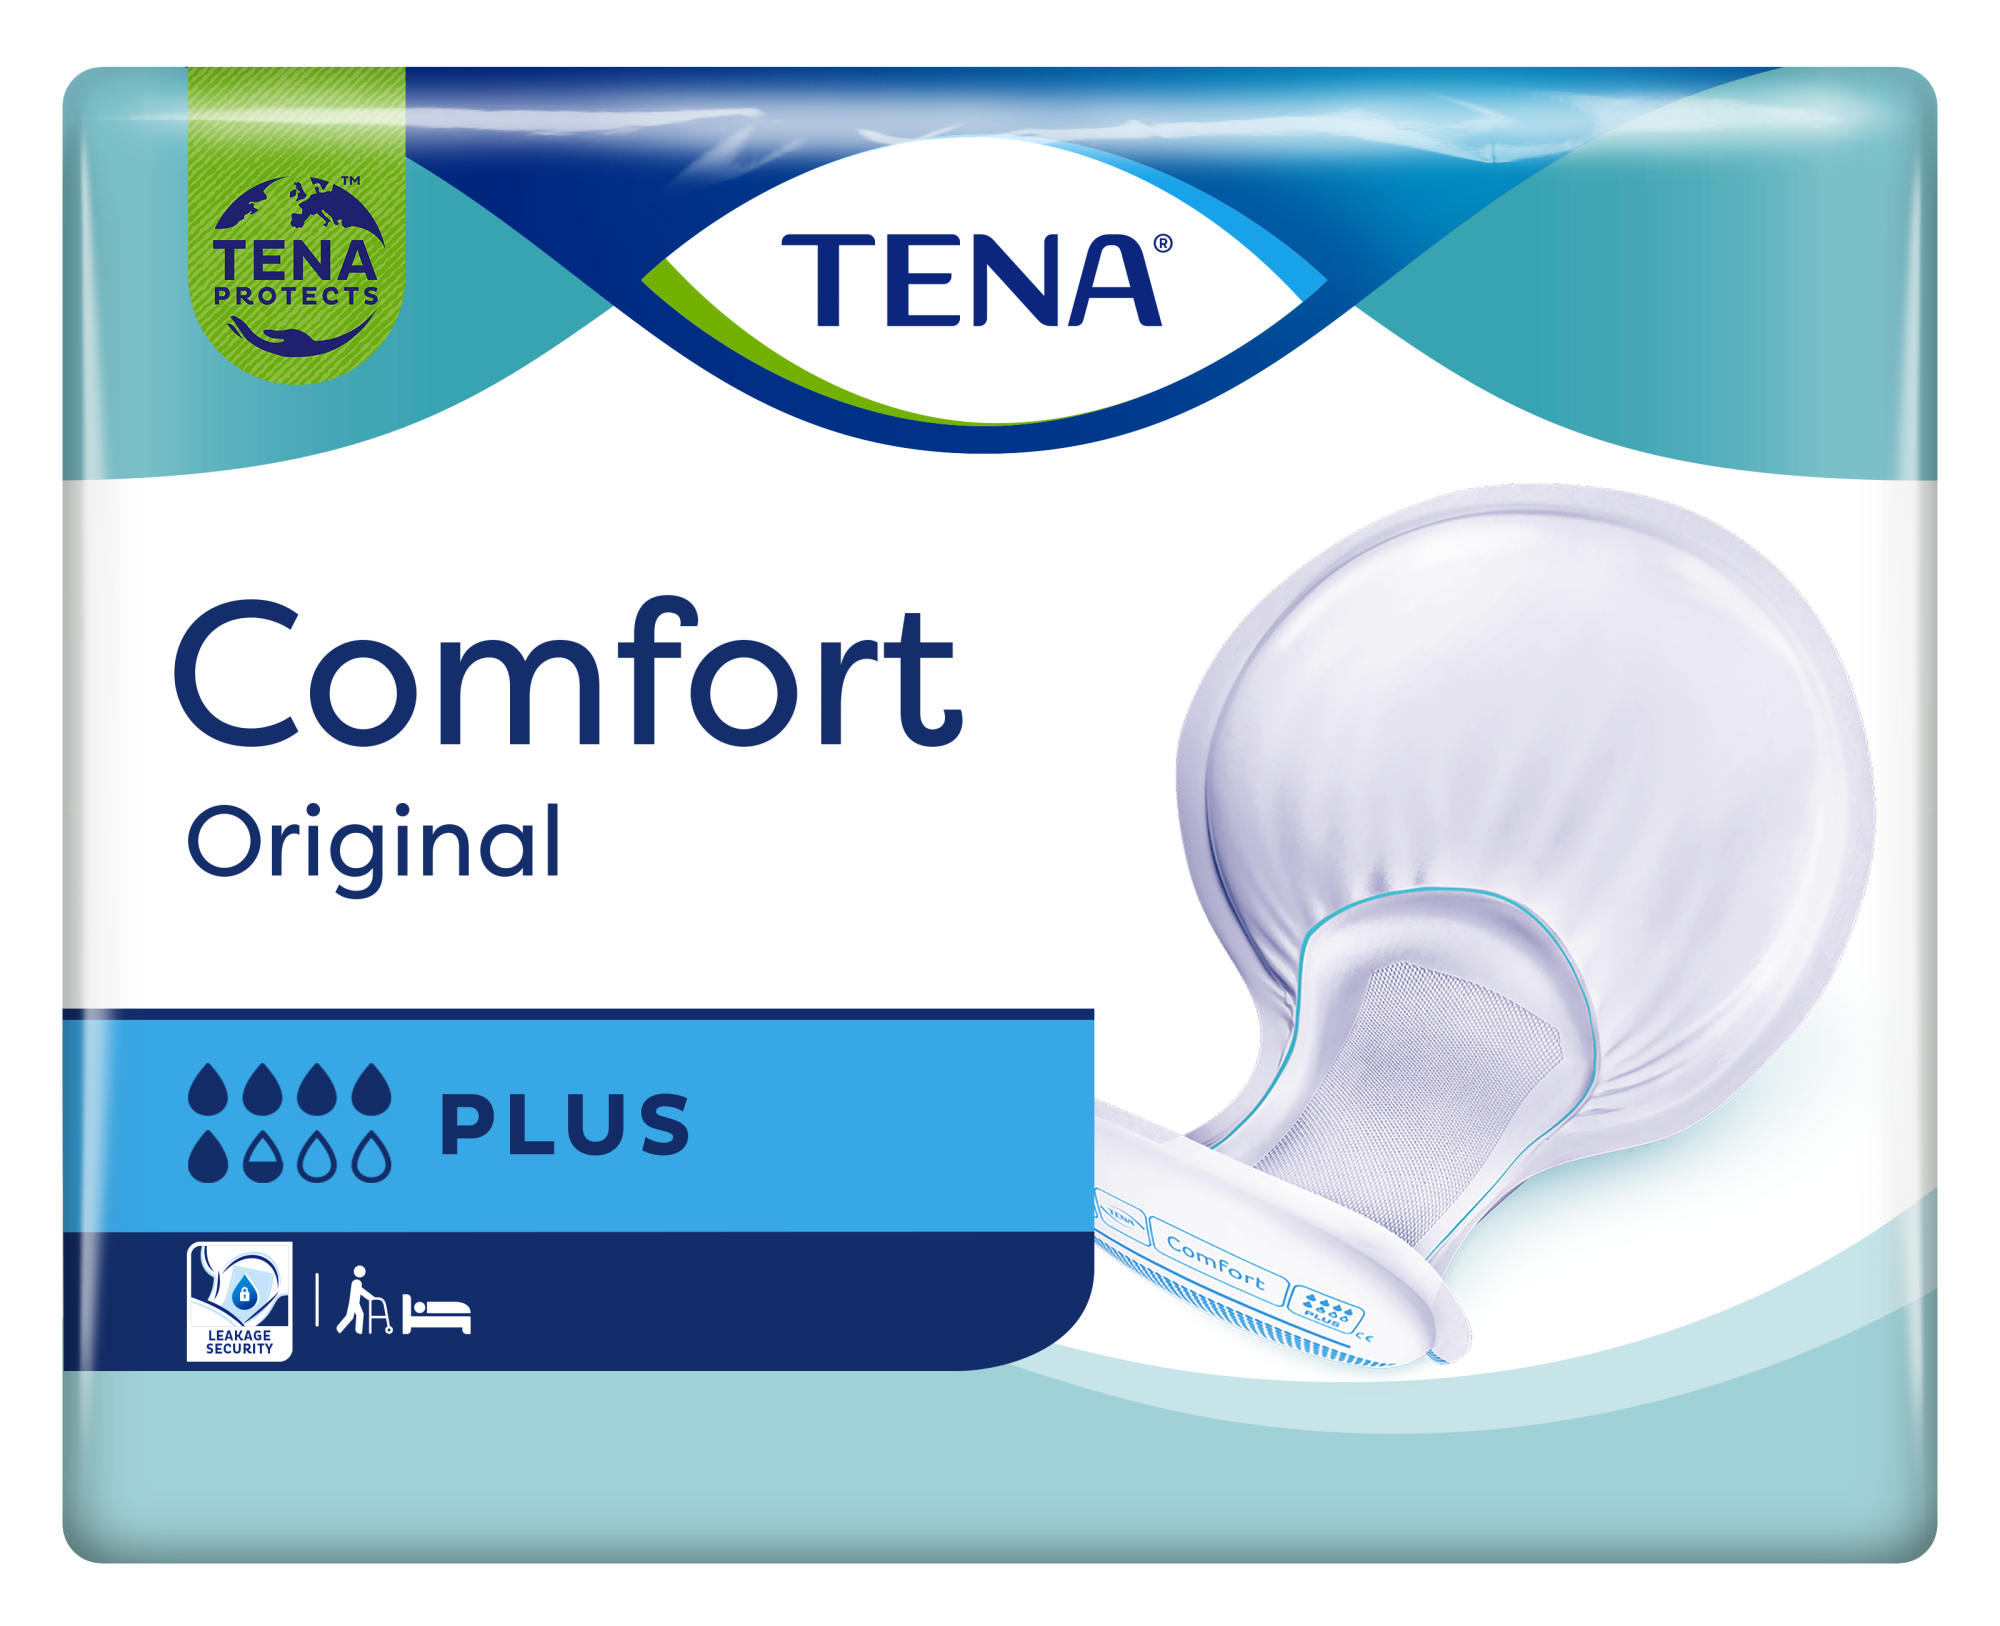 TENA Comfort Original Plus